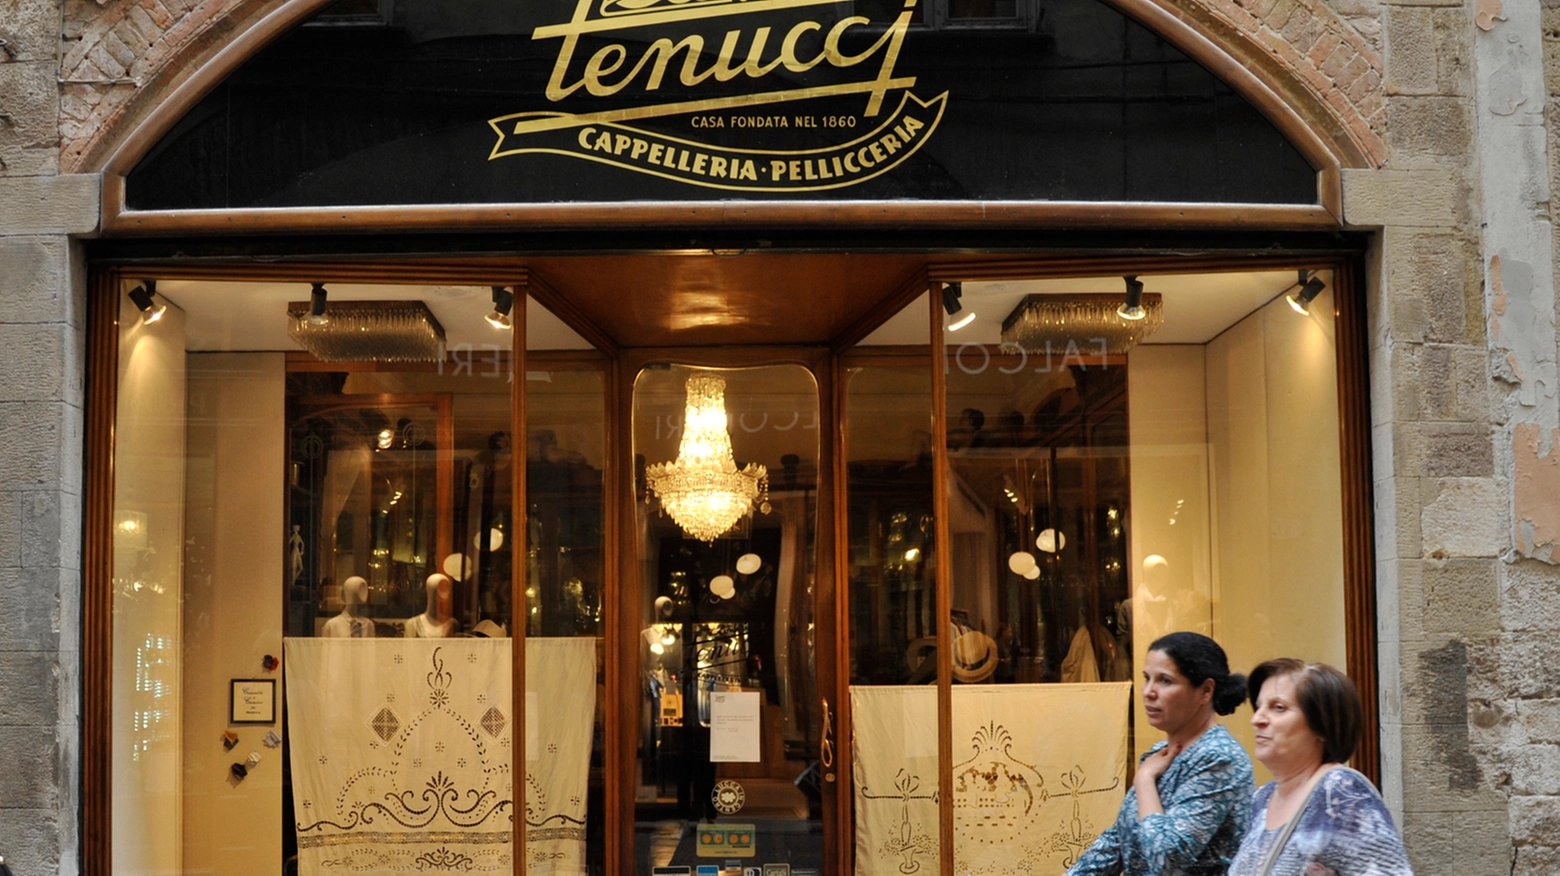 Il negozio Tenucci (foto Alcide)